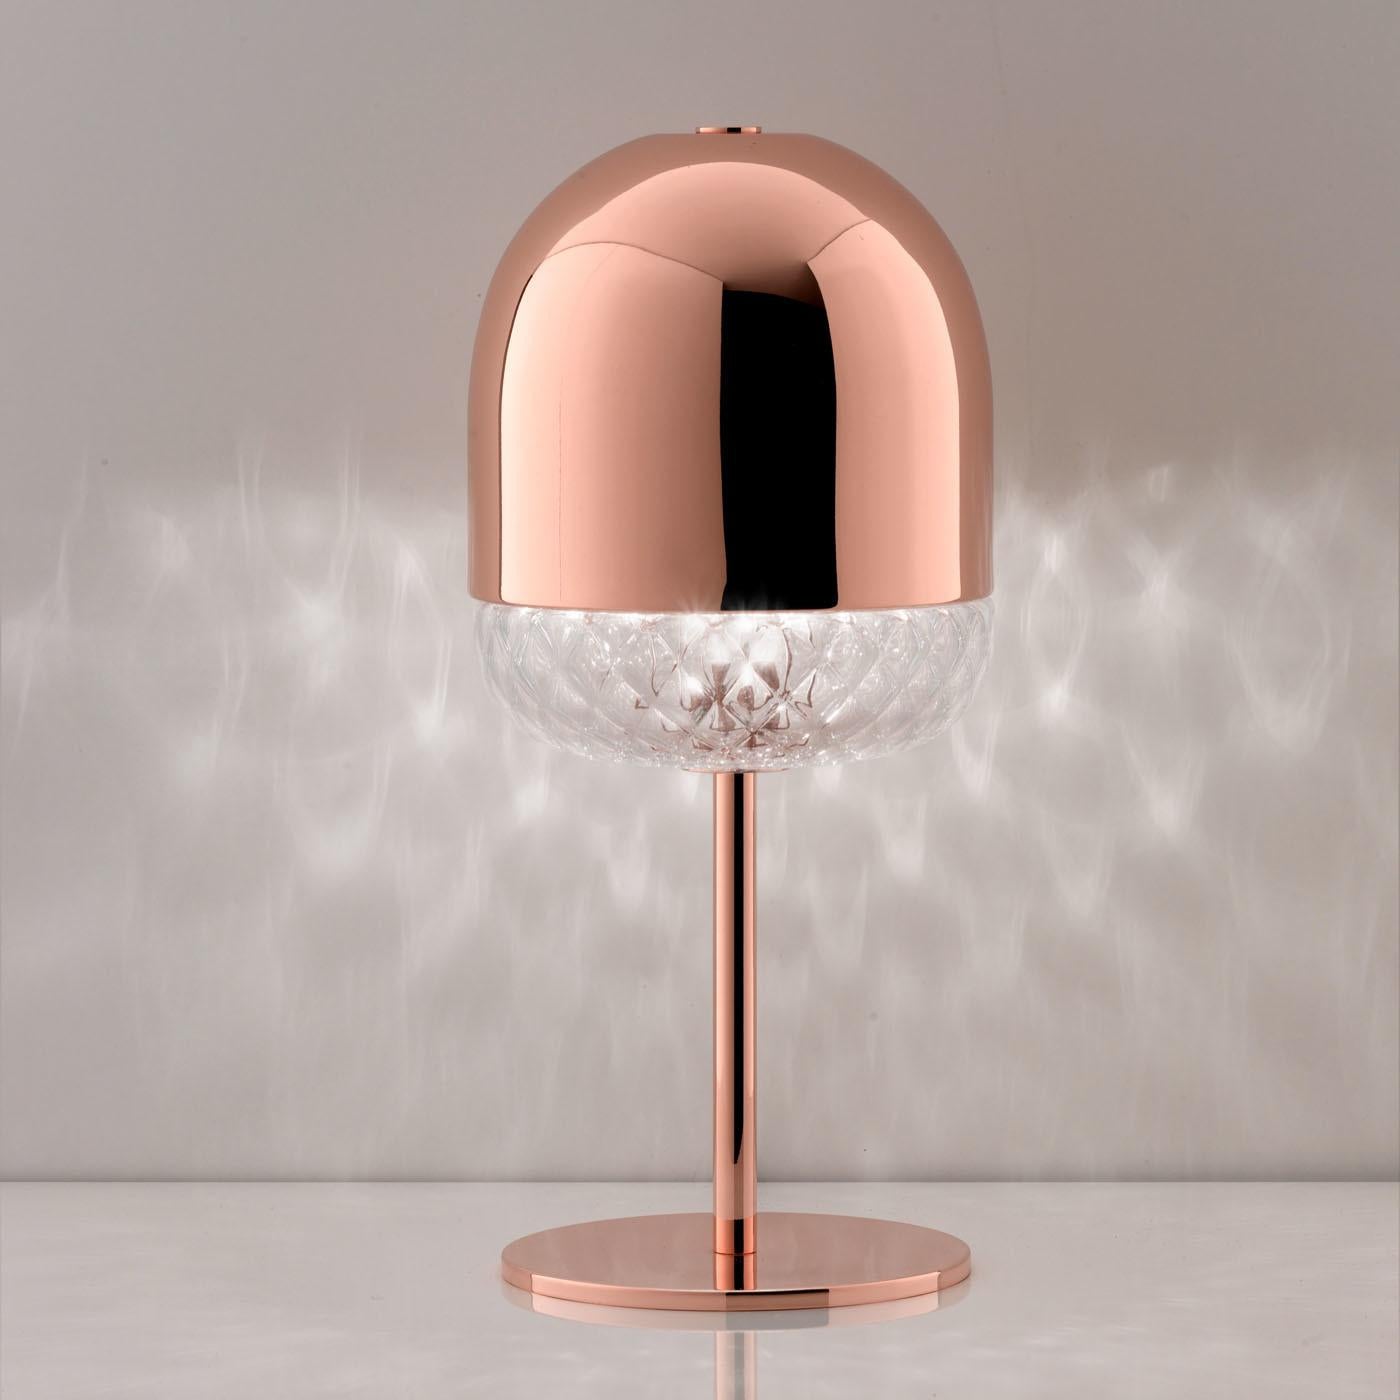 Cette élégante lampe de table conçue par Matteo Zorzenoni s'inspire de l'une des plus anciennes techniques vénitiennes de soufflage du verre, le Balloton. La lumière perce à travers les veines de la section en verre qui orne le bas de l'abat-jour.